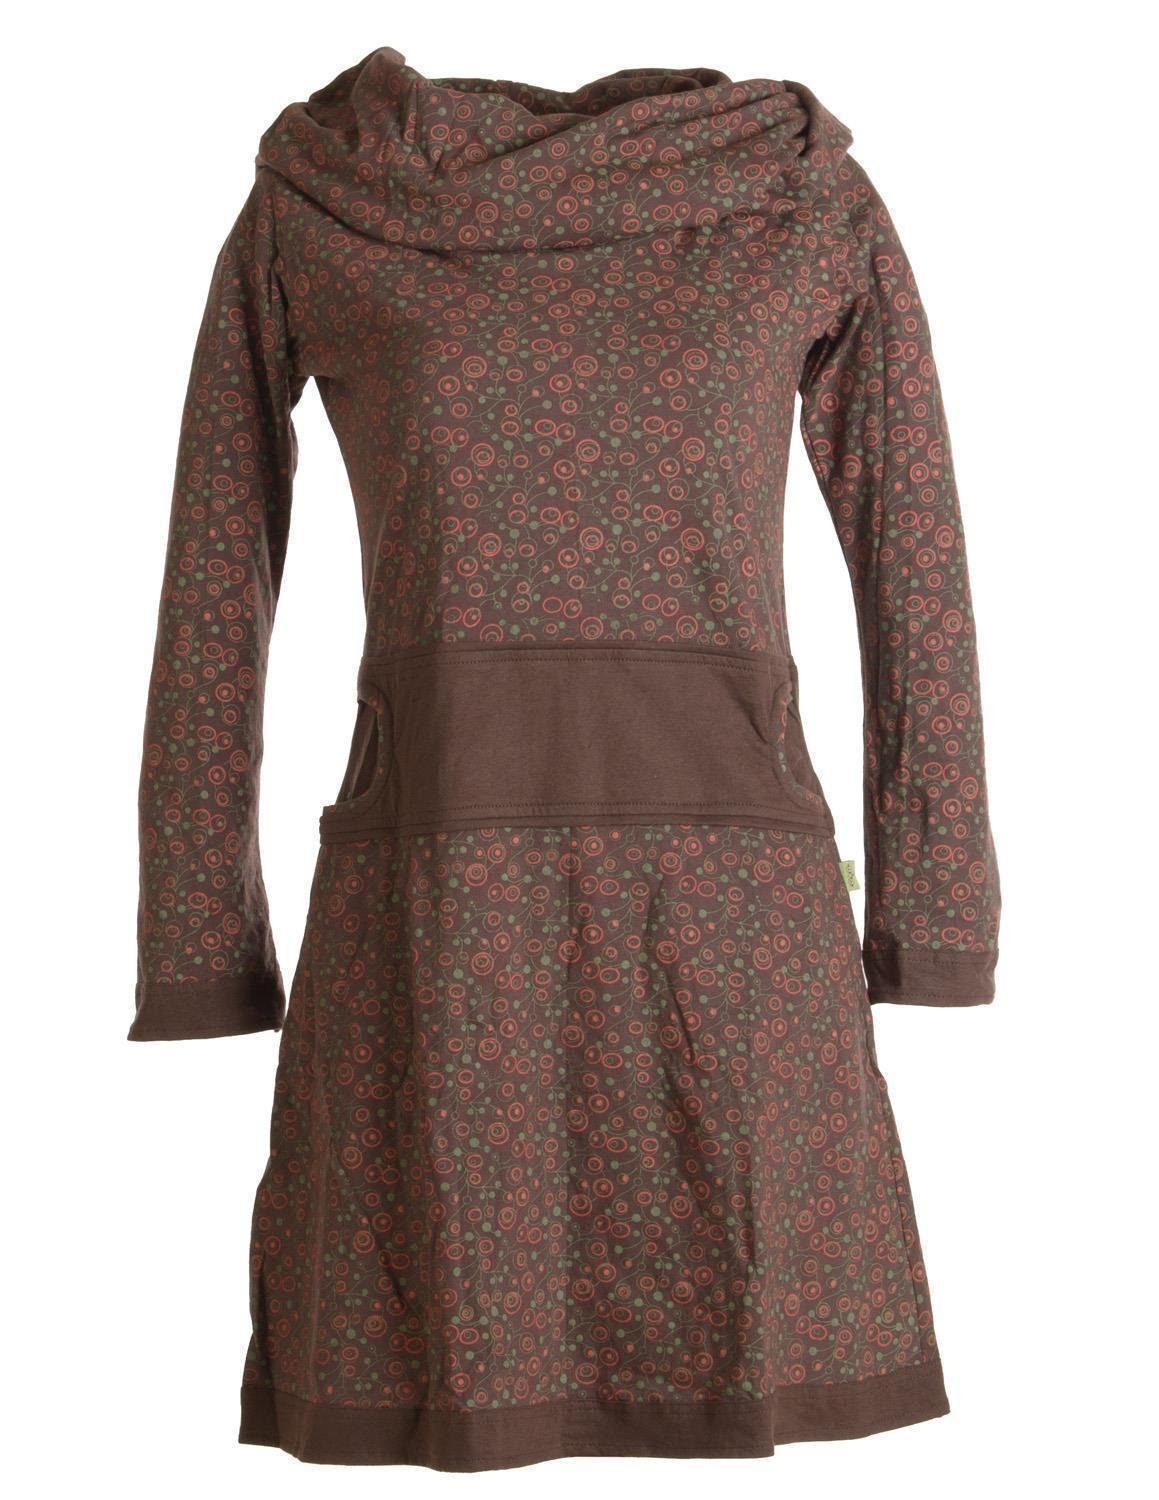 Vishes Jerseykleid Bedrucktes Kleid dunkelbraun Style Schalkragen aus Boho, mit Baumwolle Goa, Hippie Ethno